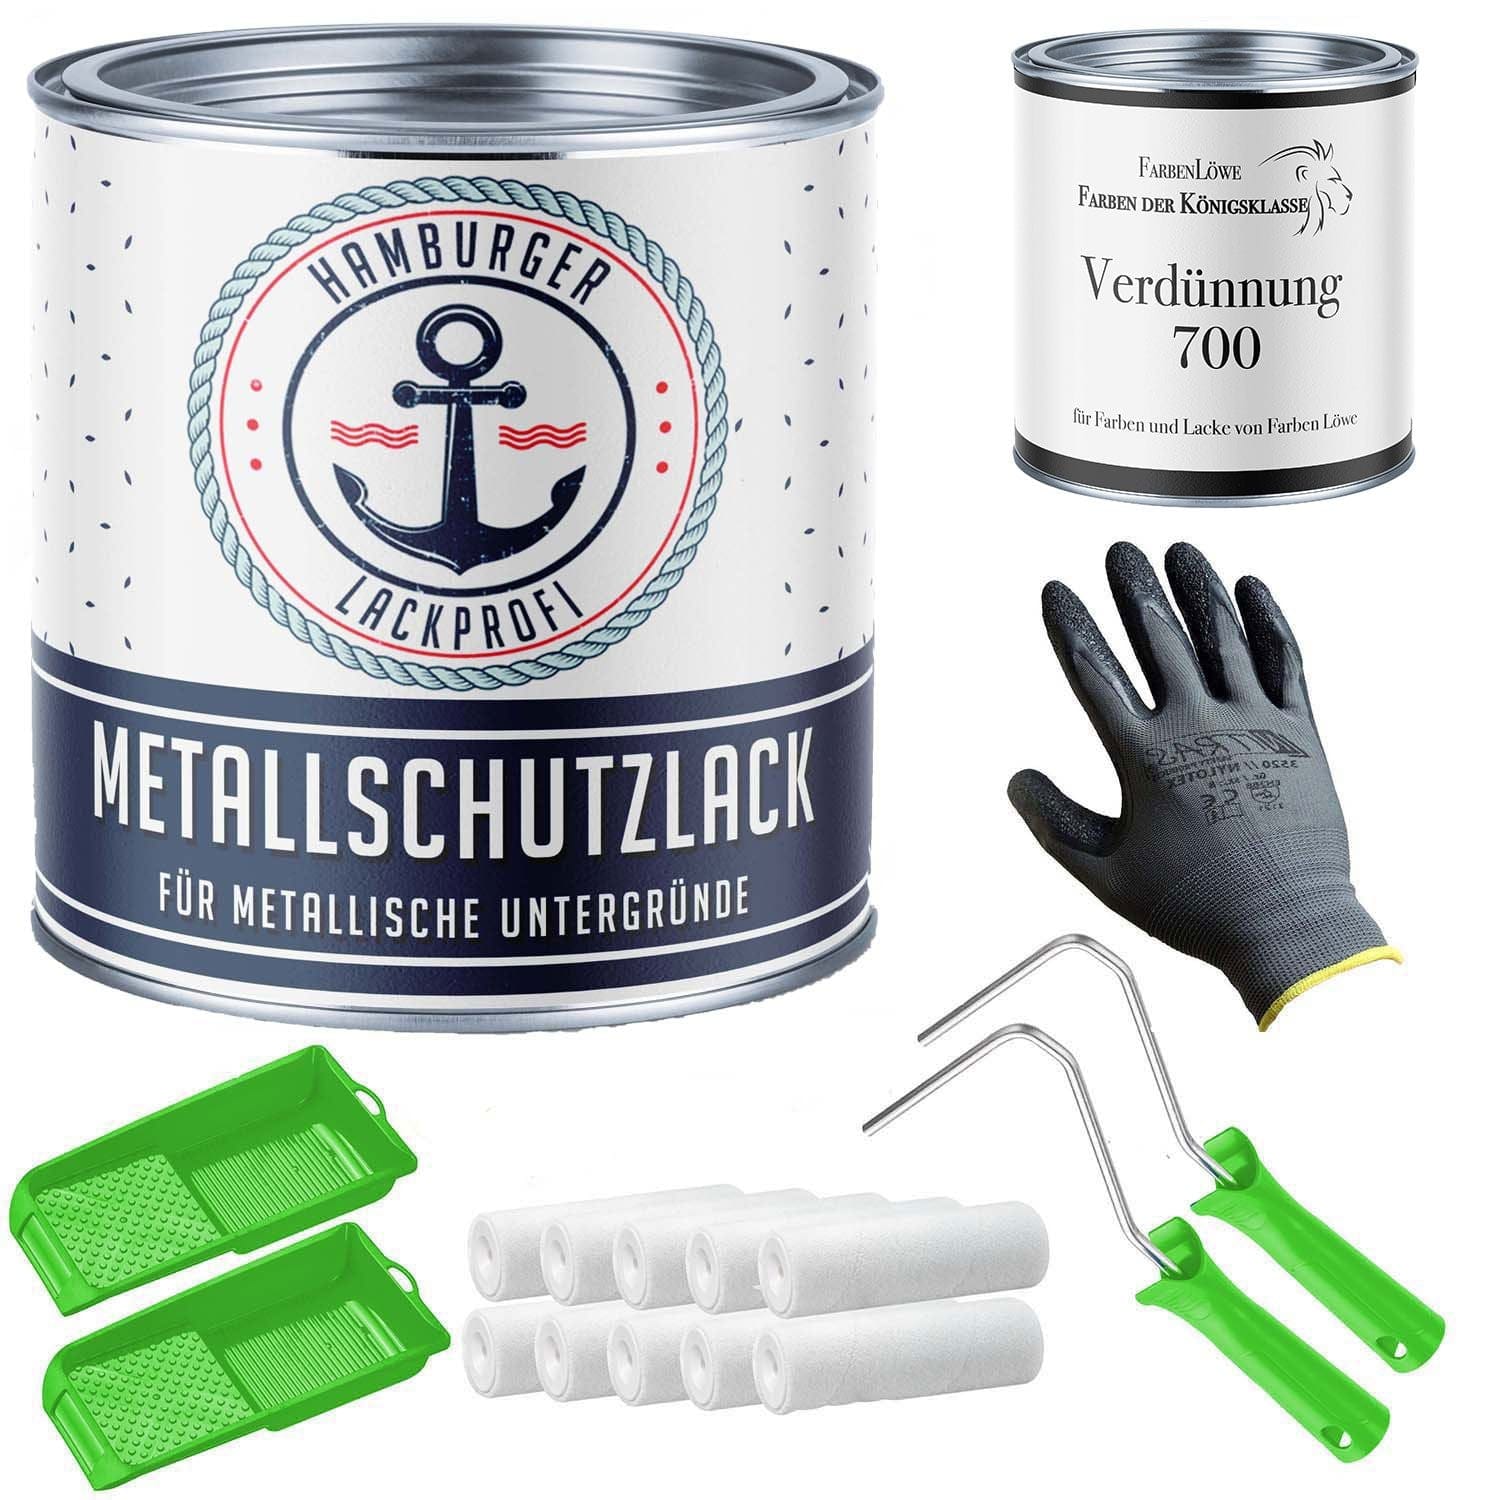 FARBENLÖWE Lacke & Beschichtungen Hamburger Lack-Profi Metallschutzlack in Tiefschwarz RAL 9005 mit Lackierset (X300) & Verdünnung (1 L) - 30% Sparangebot